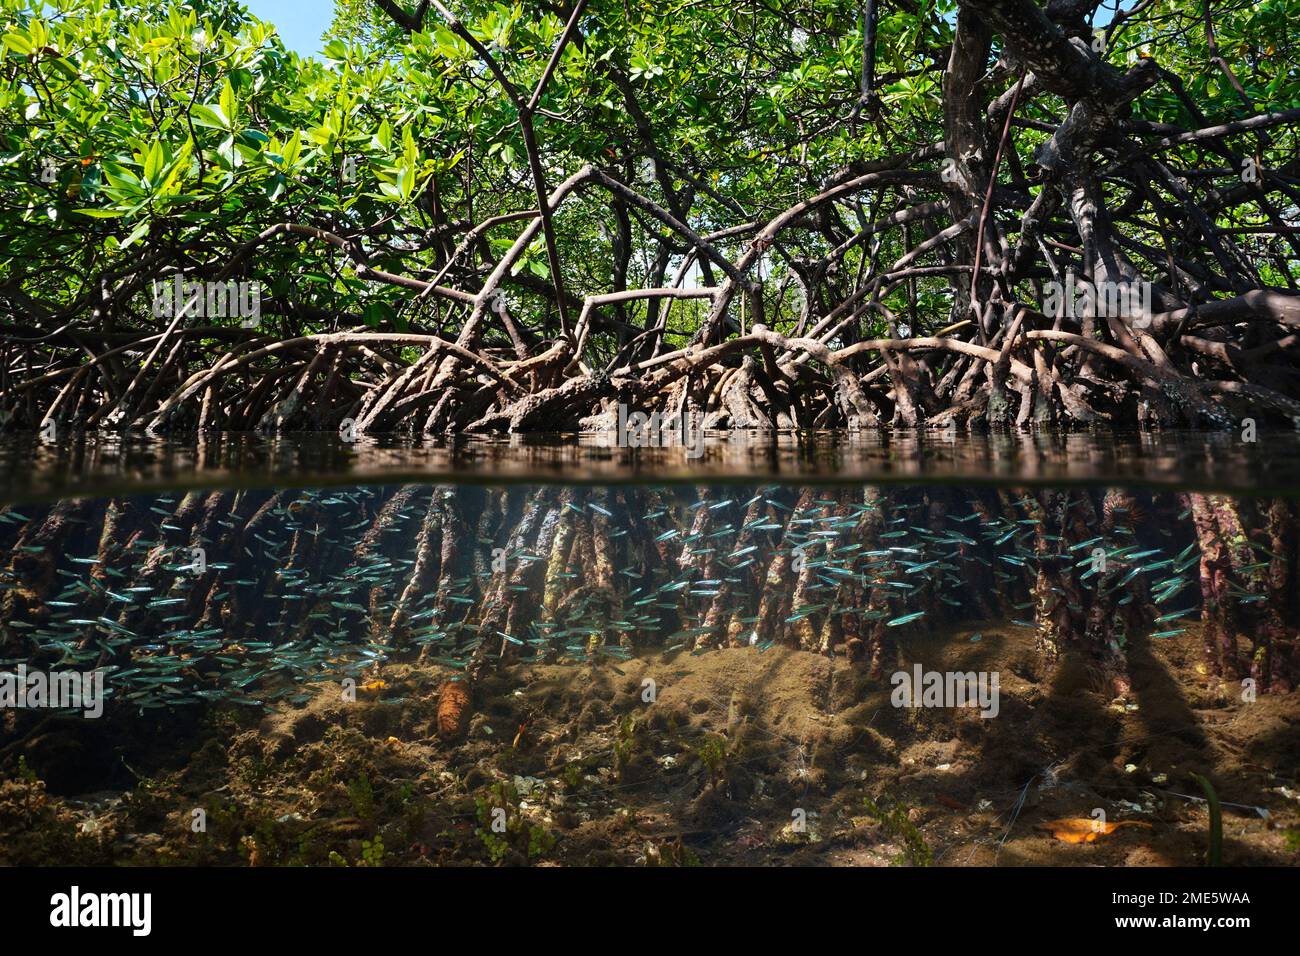 Habitat de mangrove vue partagée sur et sous la surface de l'eau, feuillage avec racines et chope de poissons sous l'eau, mer des Caraïbes, Amérique centrale Banque D'Images